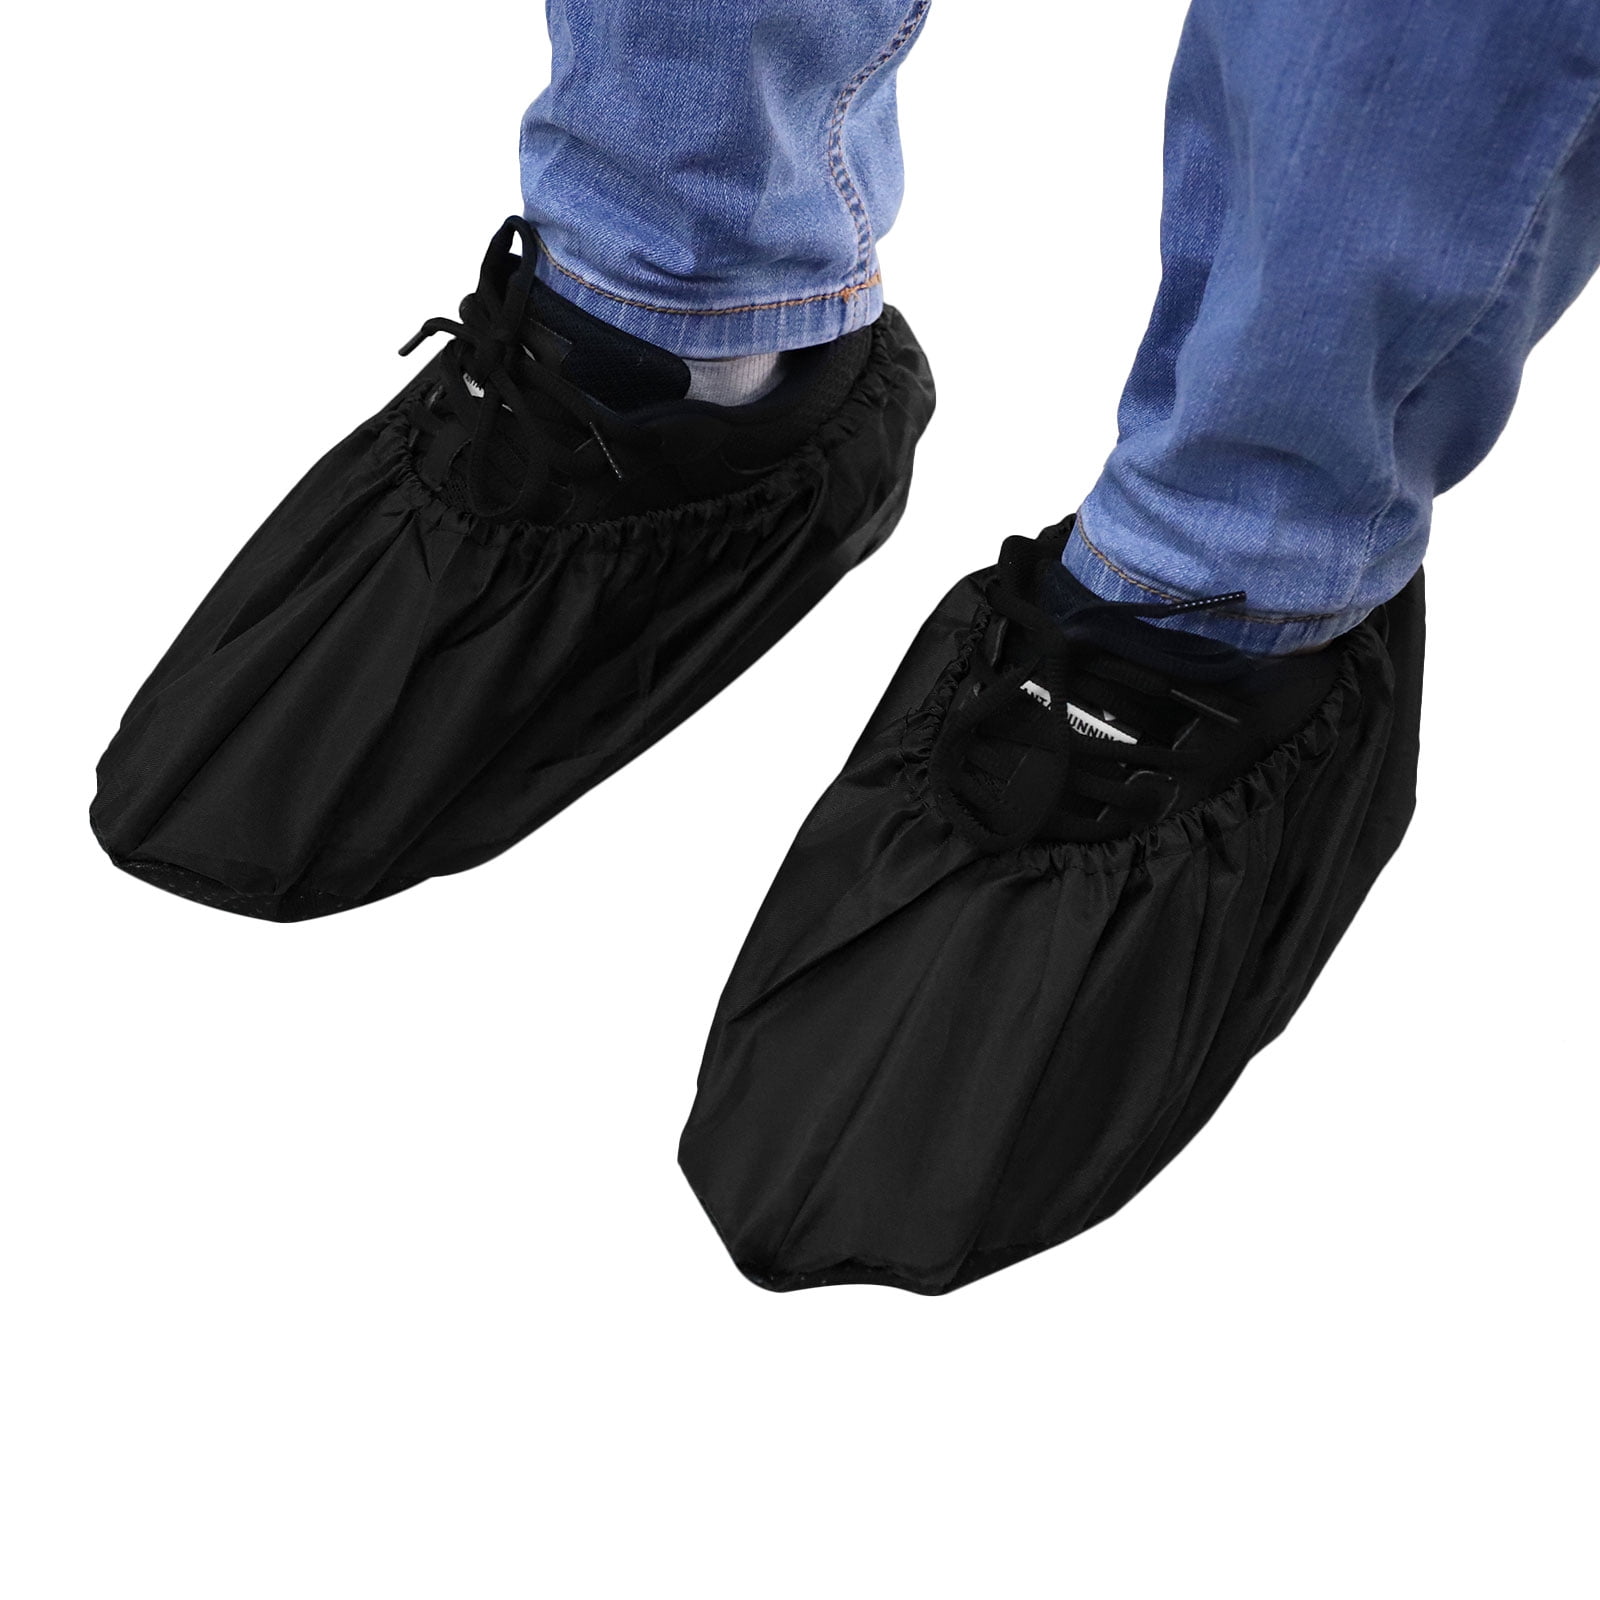 2 Pairs Waterproof Shoe Covers,Dust 